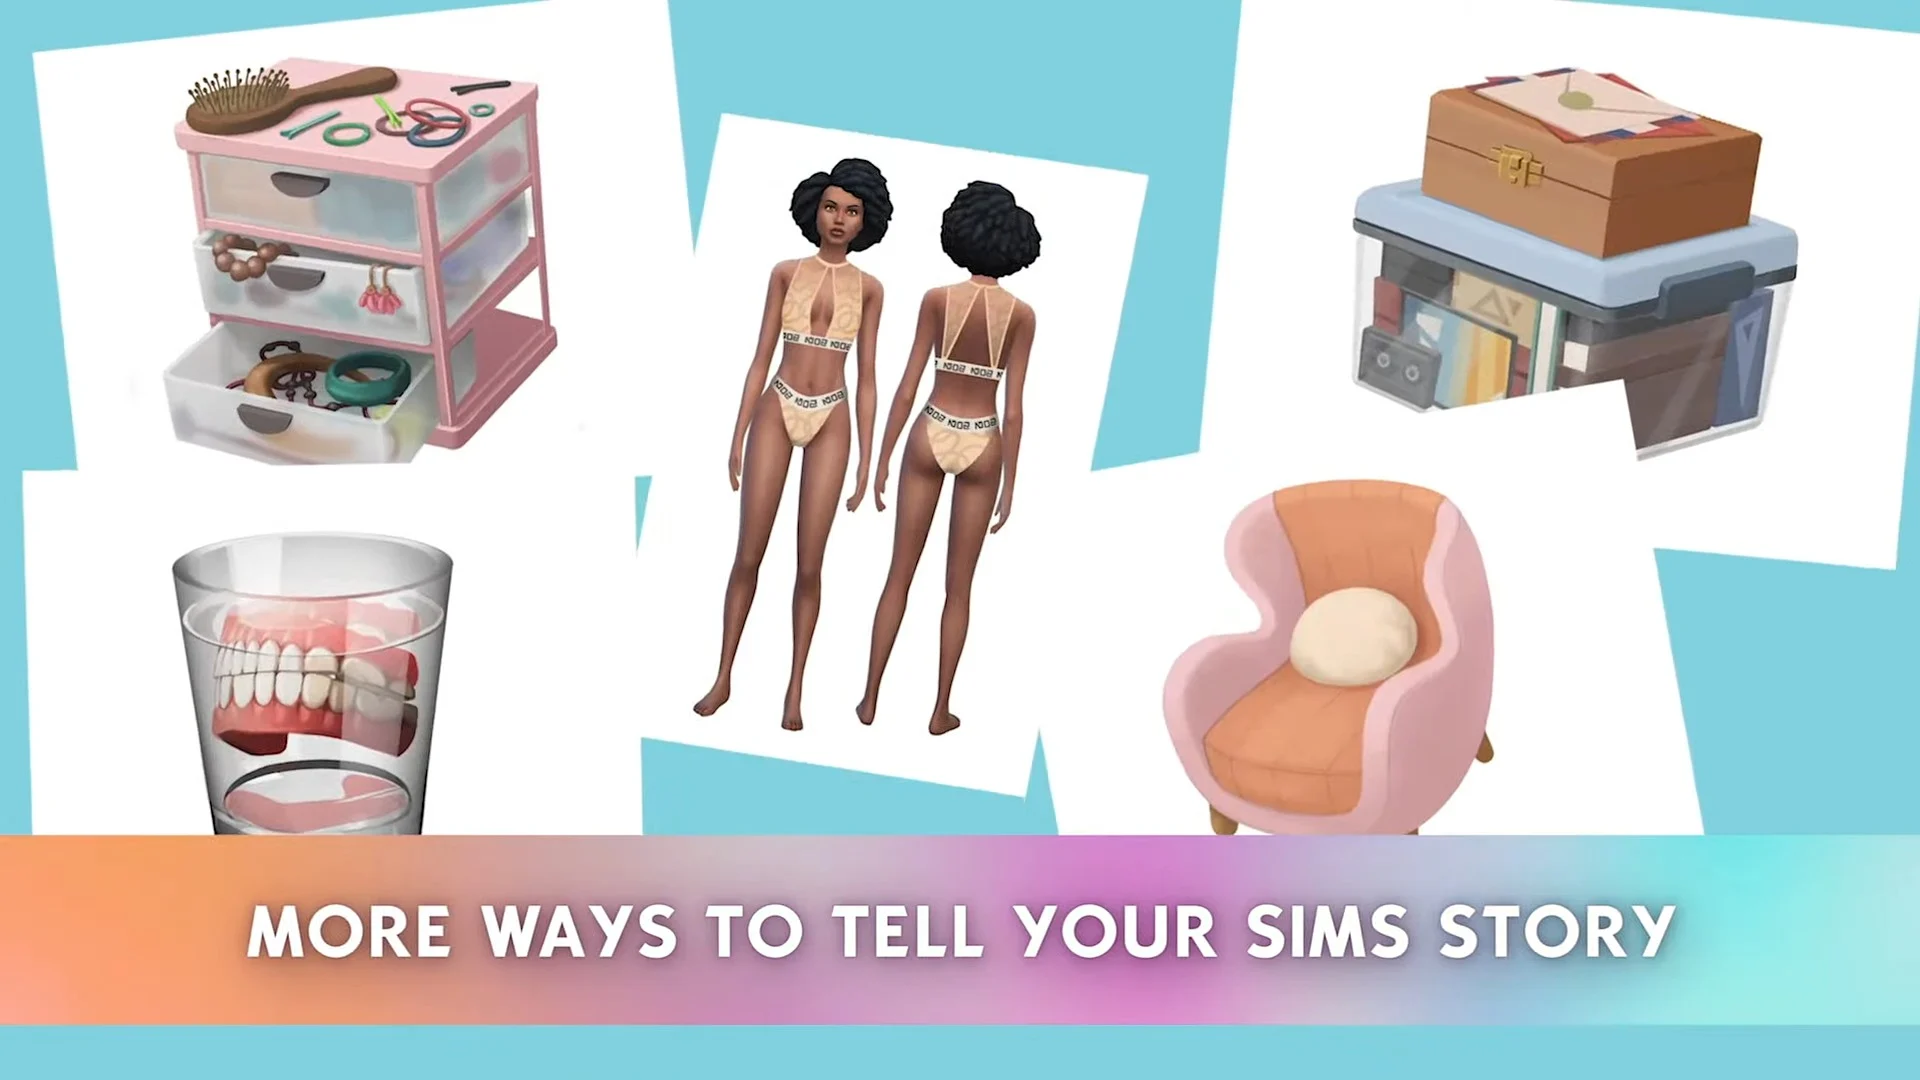 Quais são as expansões do The Sims 4? – Tecnoblog